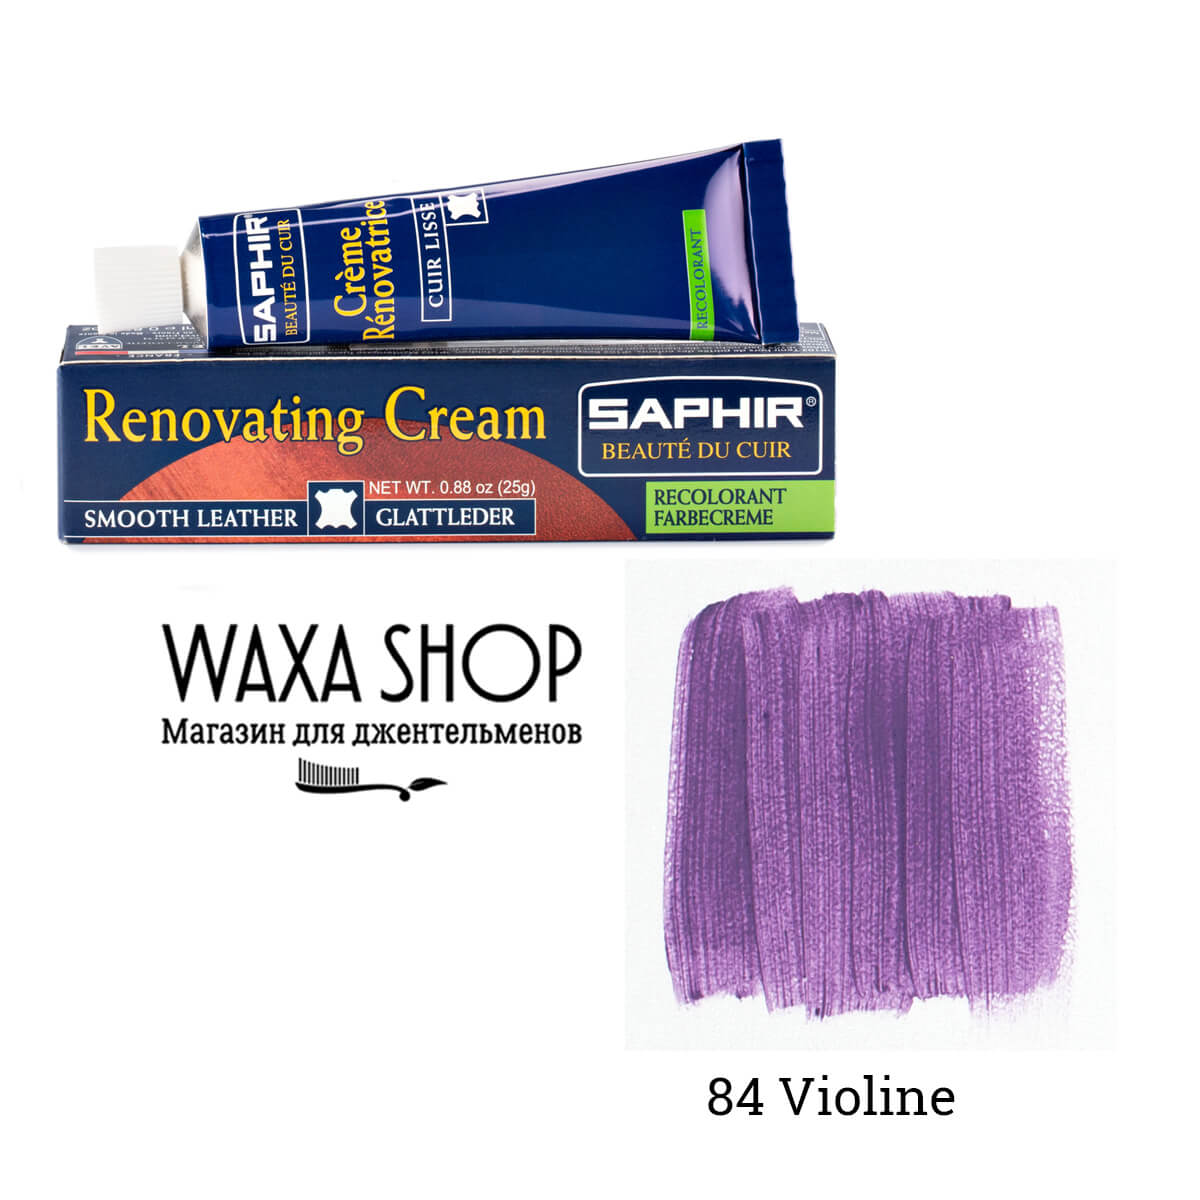 Фиолетовая жидкая кожа -  в СПб в е Waxa Shop